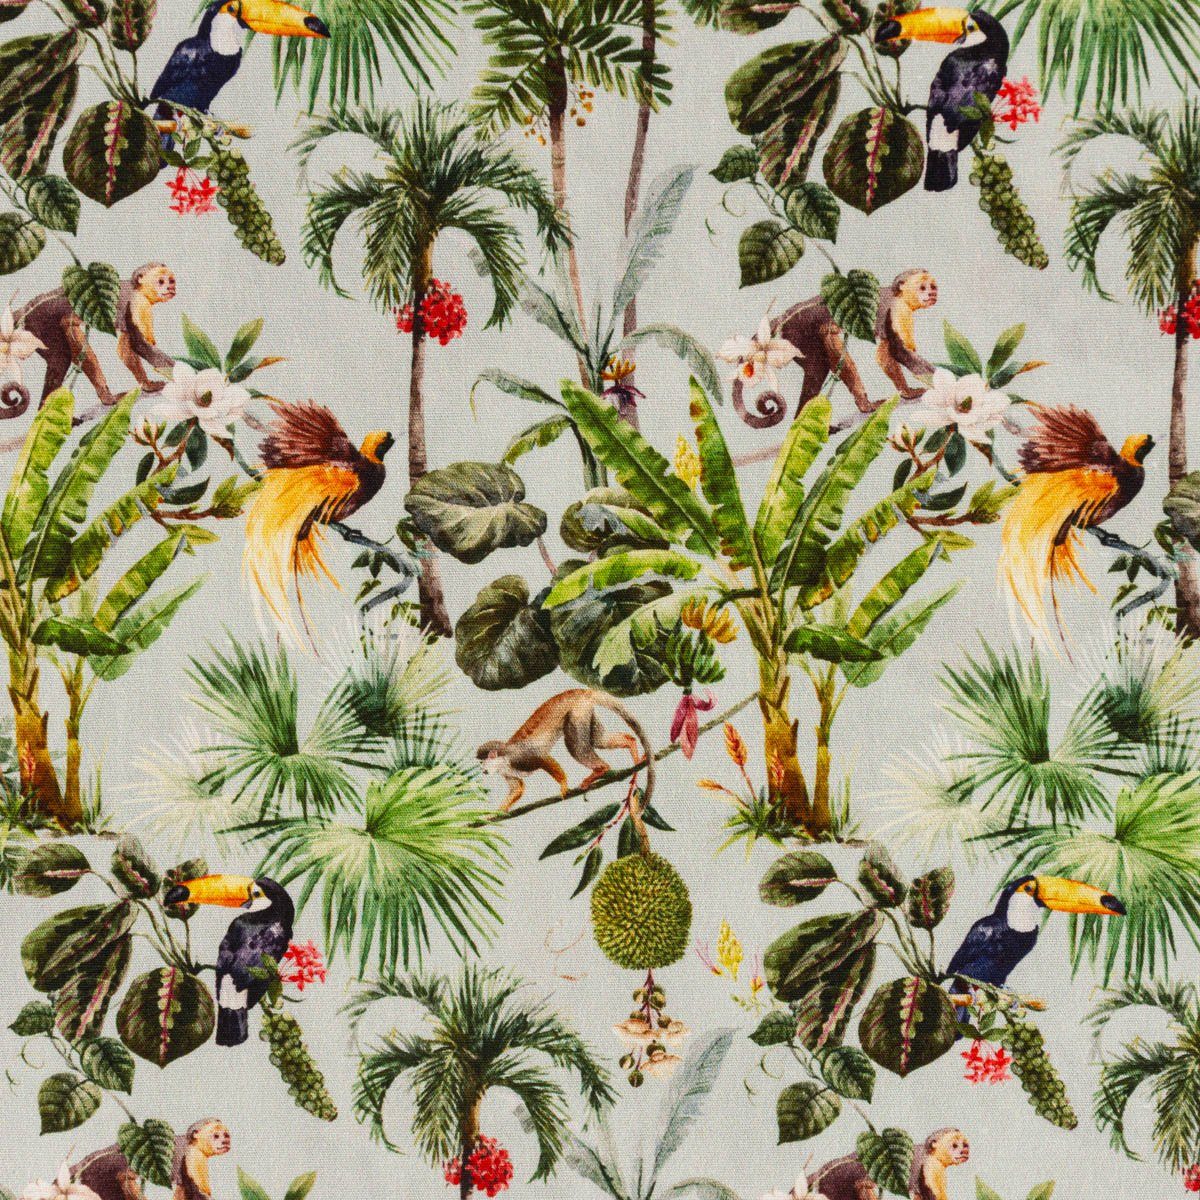 SCHÖNER LEBEN. Stoff Baumwollstoff Popeline Digitaldruck Dschungel Tiere Palmen grün 1,50m, allergikergeeignet